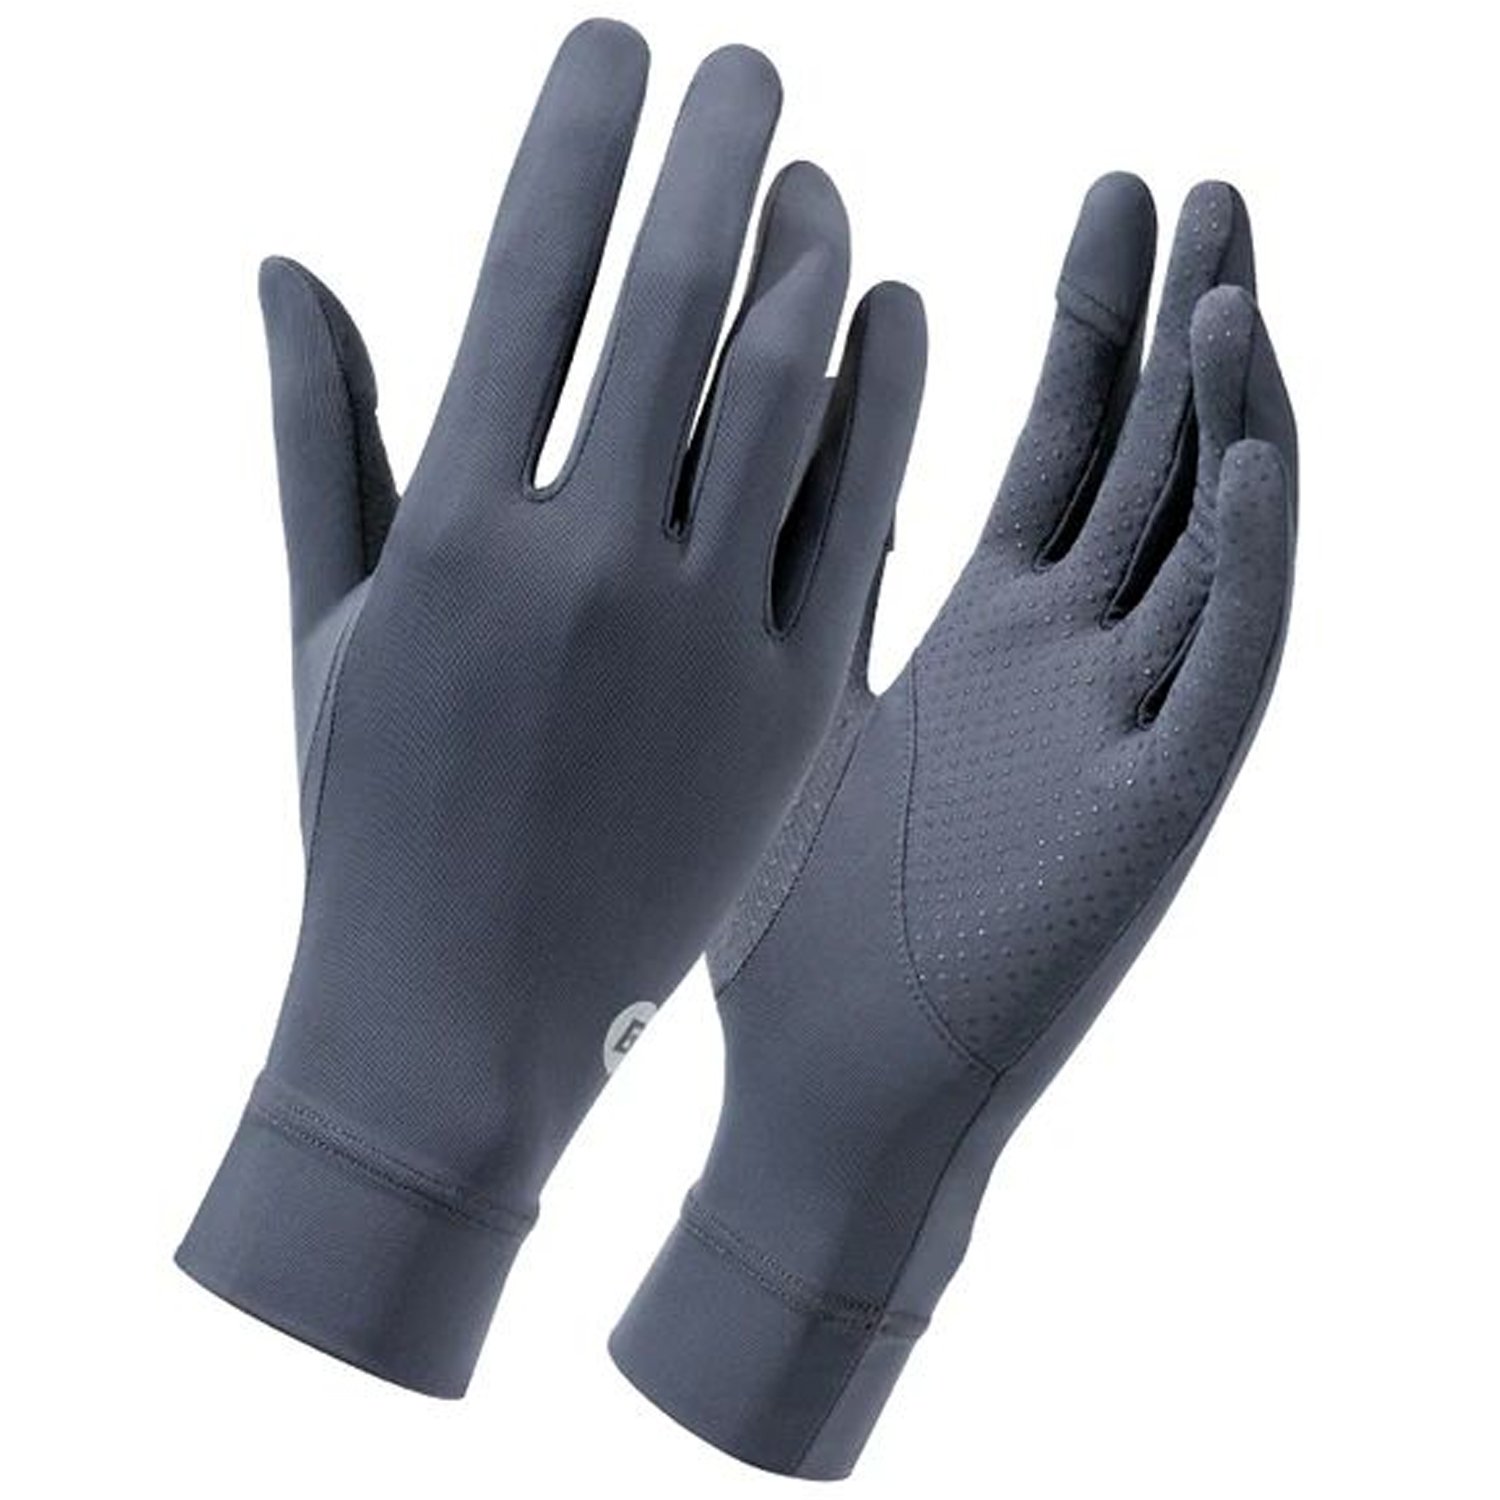 Велоперчатки ROCKBROS, охлаждающий шелк, эластичные, серый, RB_16210003002 oxford велоперчатки oxford coolmax gloves ростовка l xl